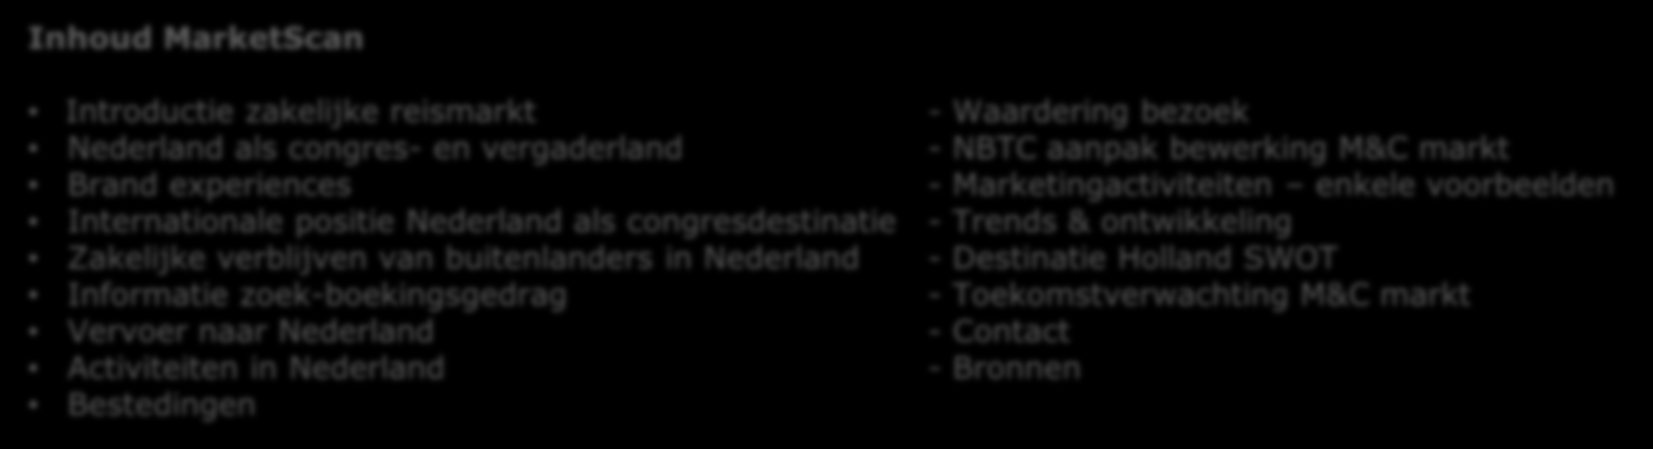 NBTC Holland Marketing (NBTC) NBTC Holland Marketing (NBTC) NBTC is verantwoordelijk voor de branding en marketing van bestemming Nederland in binnen-en buitenland.